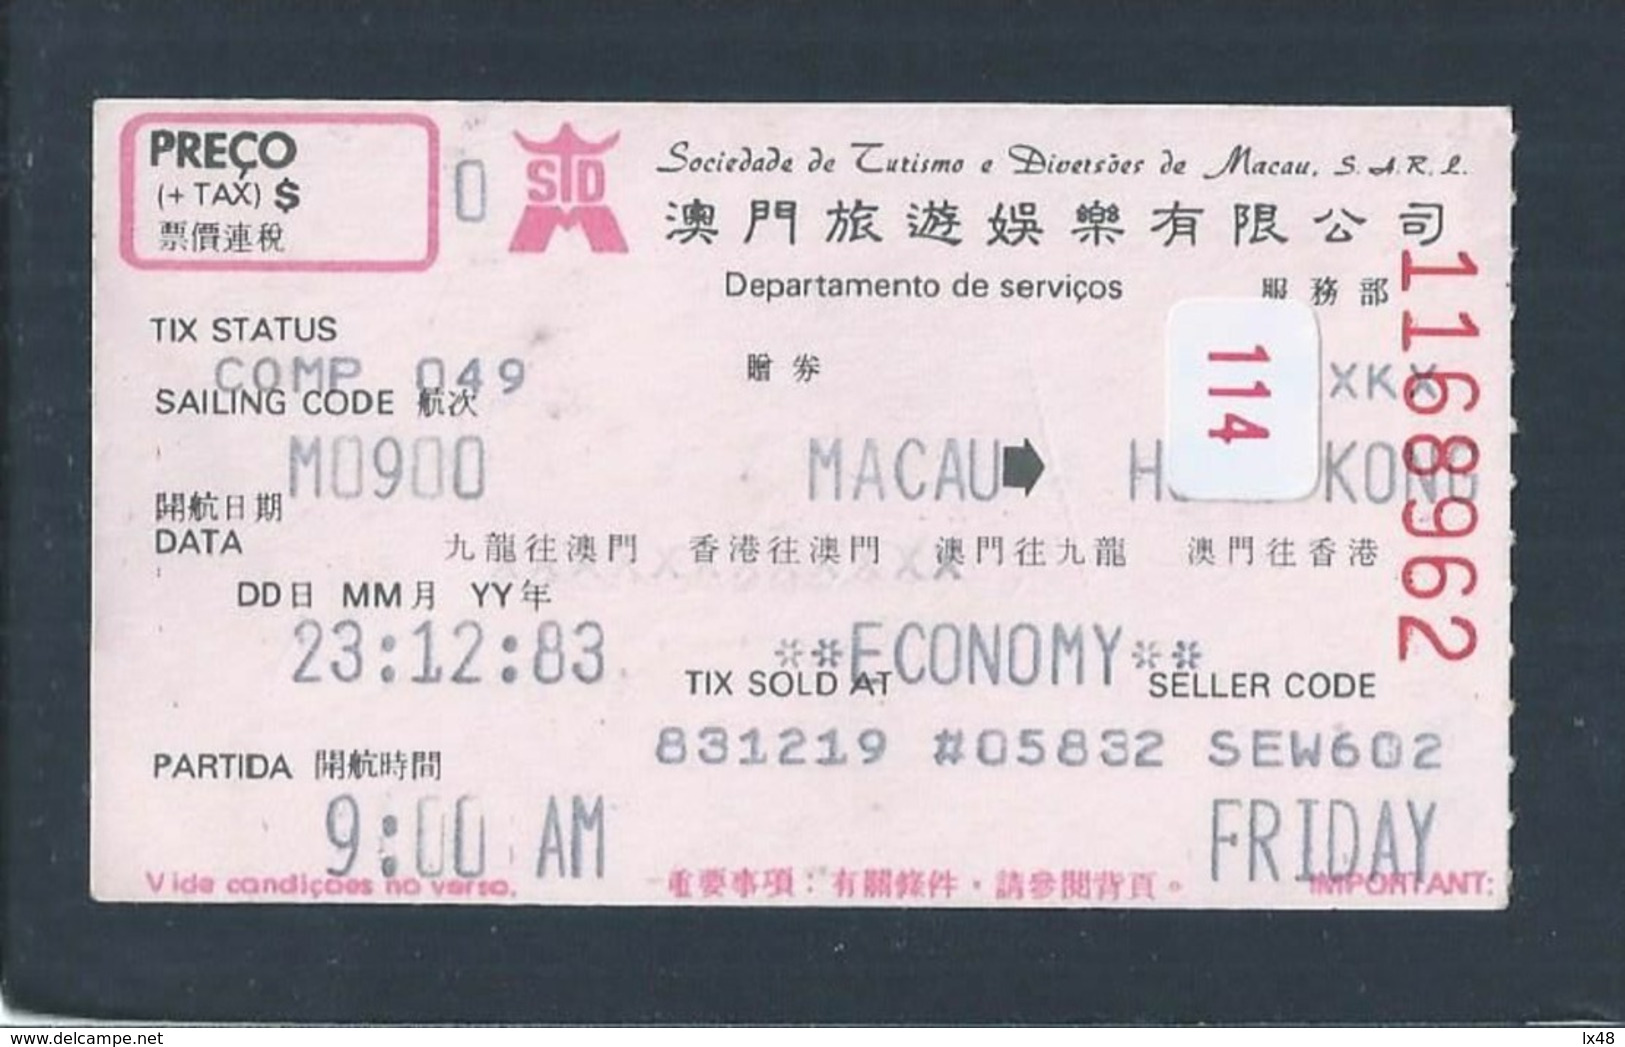 Macao Transport Ticket - Hong Kong. Macau Amusement Company. Macao Fahrschein - Hong Kong. Billets De Transport. Macau - Monde